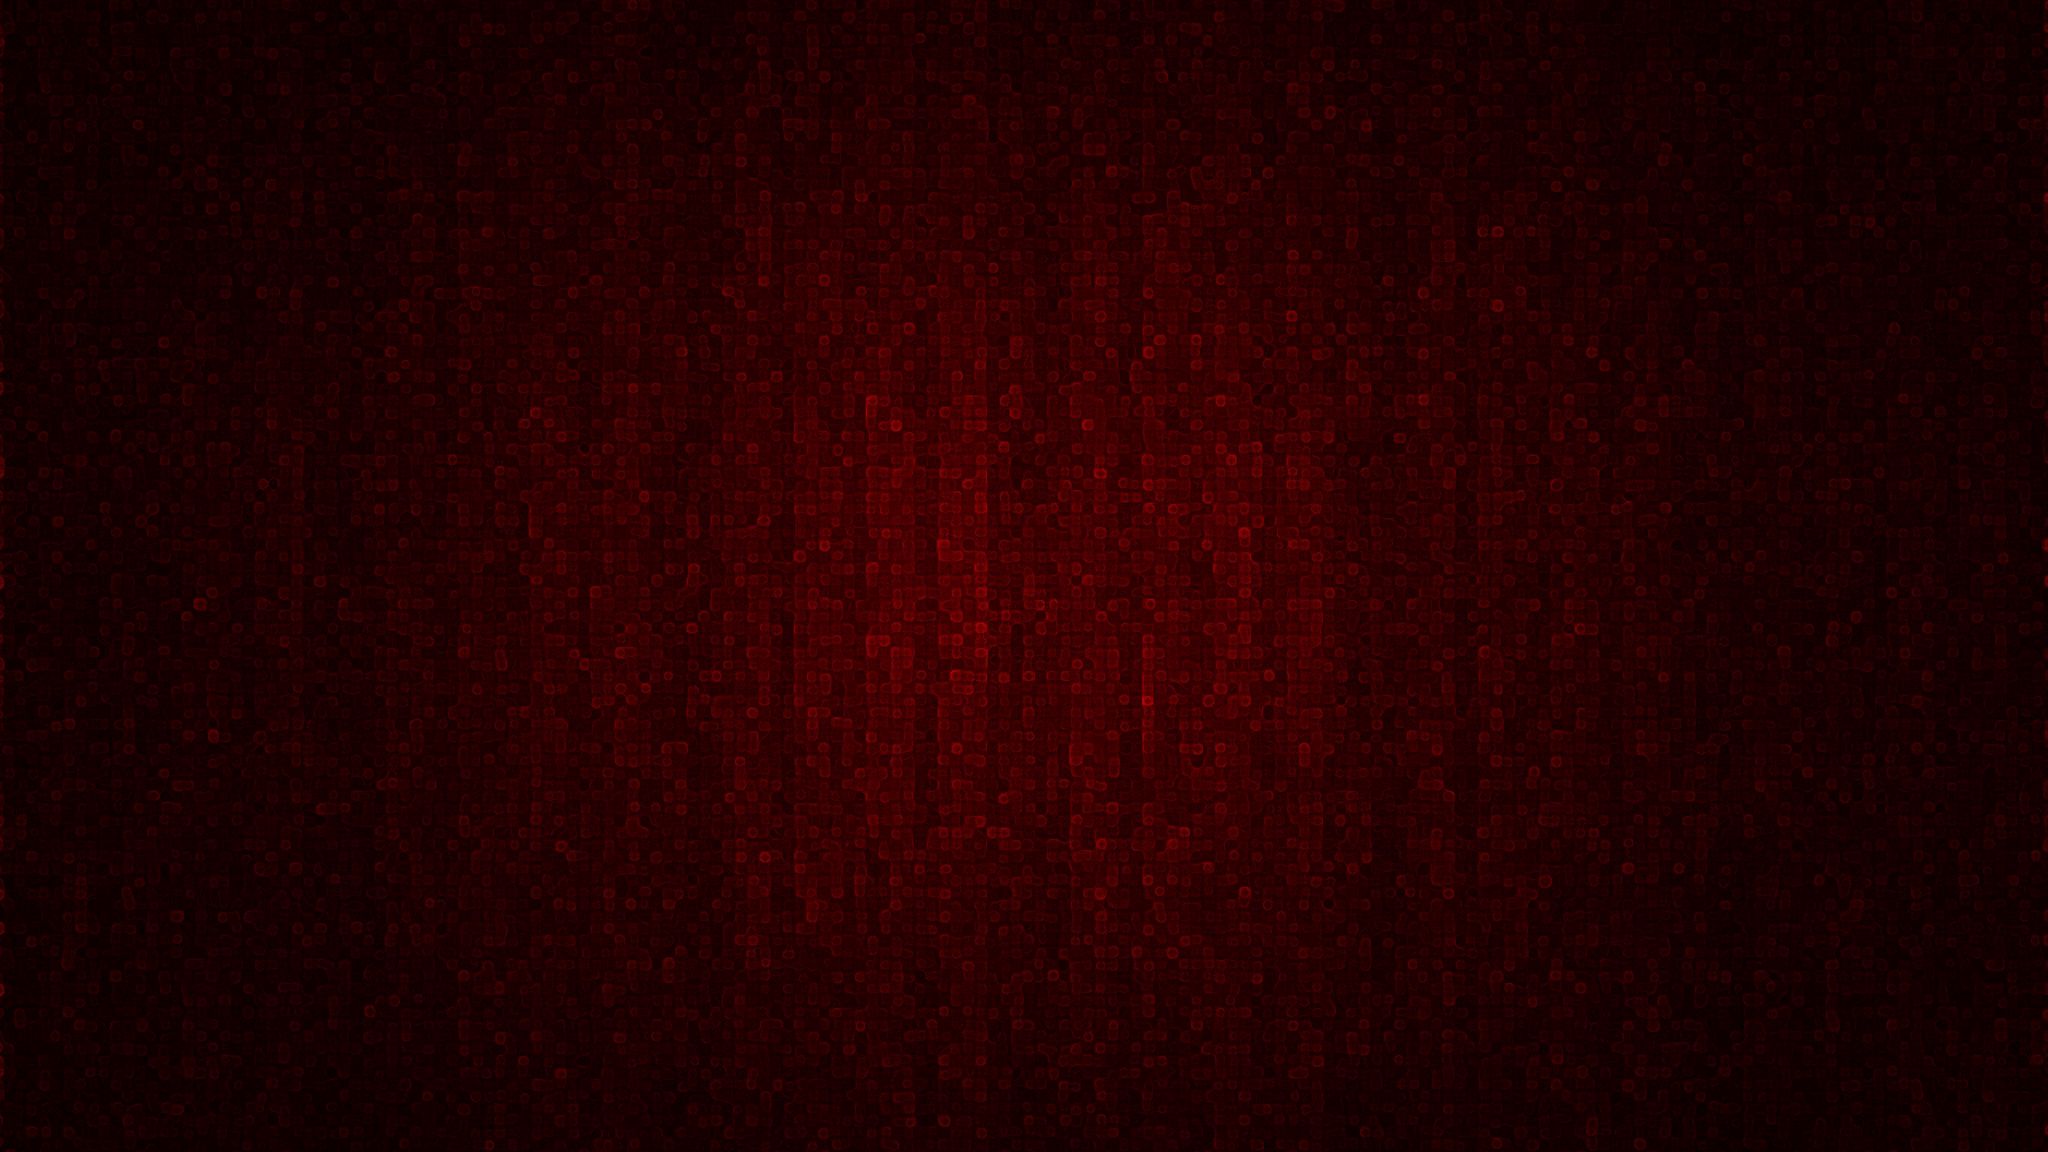 Tải ngay hình nền 2048x1152 pixel với màu nền đỏ nhạt cực kỳ bắt mắt. Với hiệu ứng bóng và ánh sáng đầy nghệ thuật, hình nền này sẽ làm cho màn hình của bạn trở nên sống động và thú vị hơn bao giờ hết. Hãy thưởng thức hình nền đẹp này ngay nào!